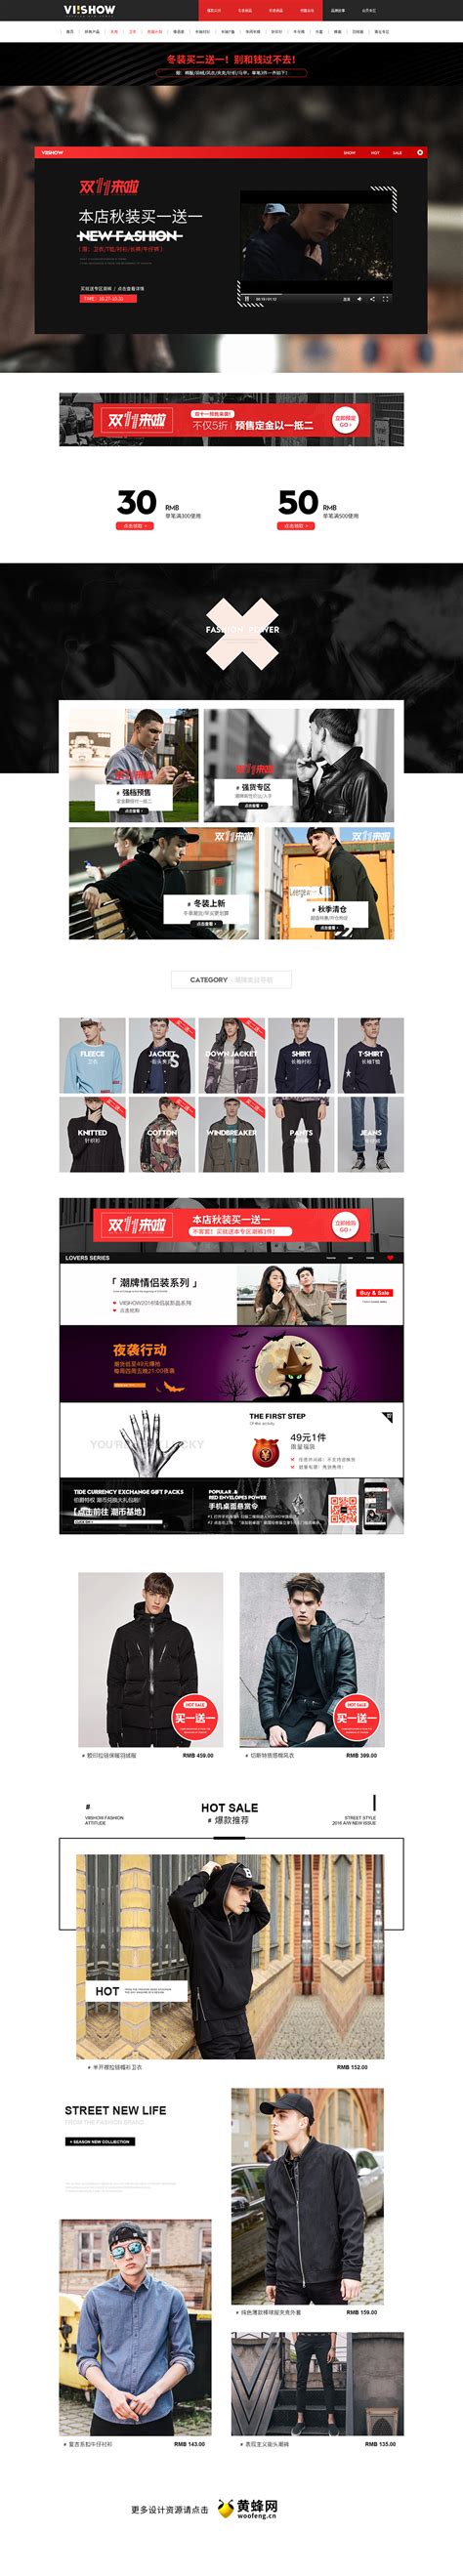 viishow男装服饰天猫双11预售双十一预售首页页面设计 - - 大美工dameigong.cn